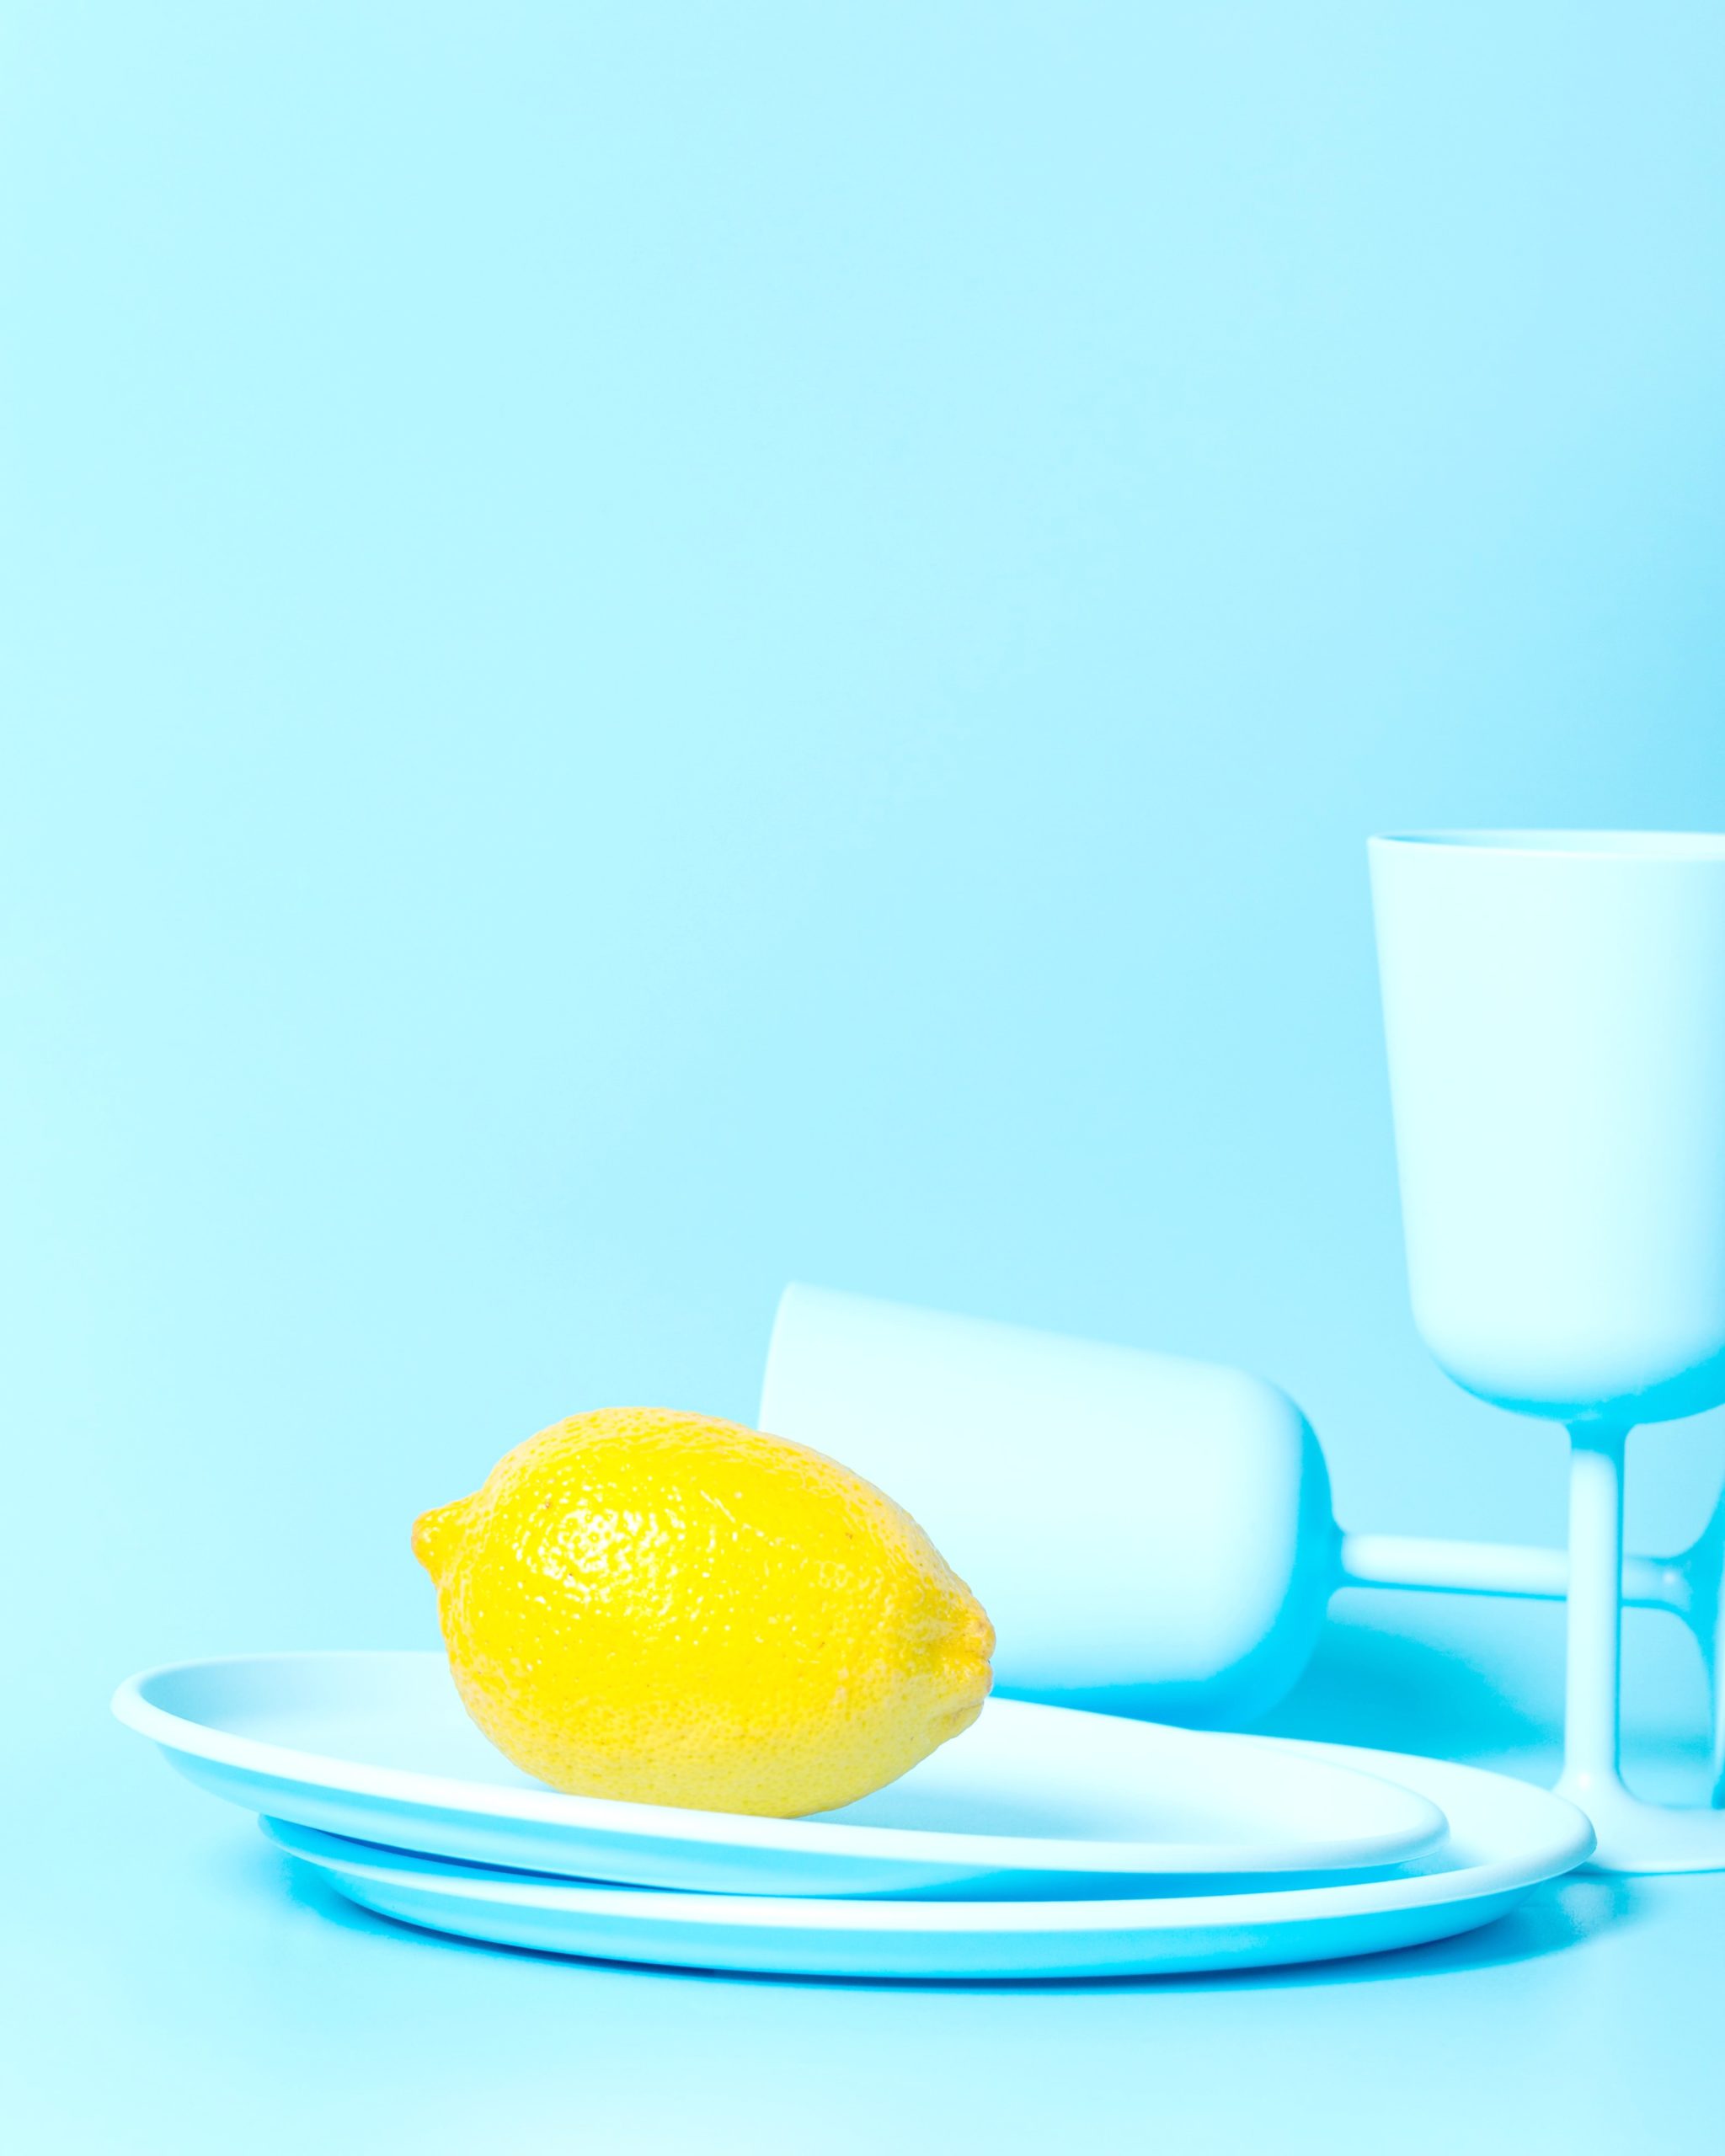 <img src="lemon.jpg" alt="lemon on blue plate"/> 